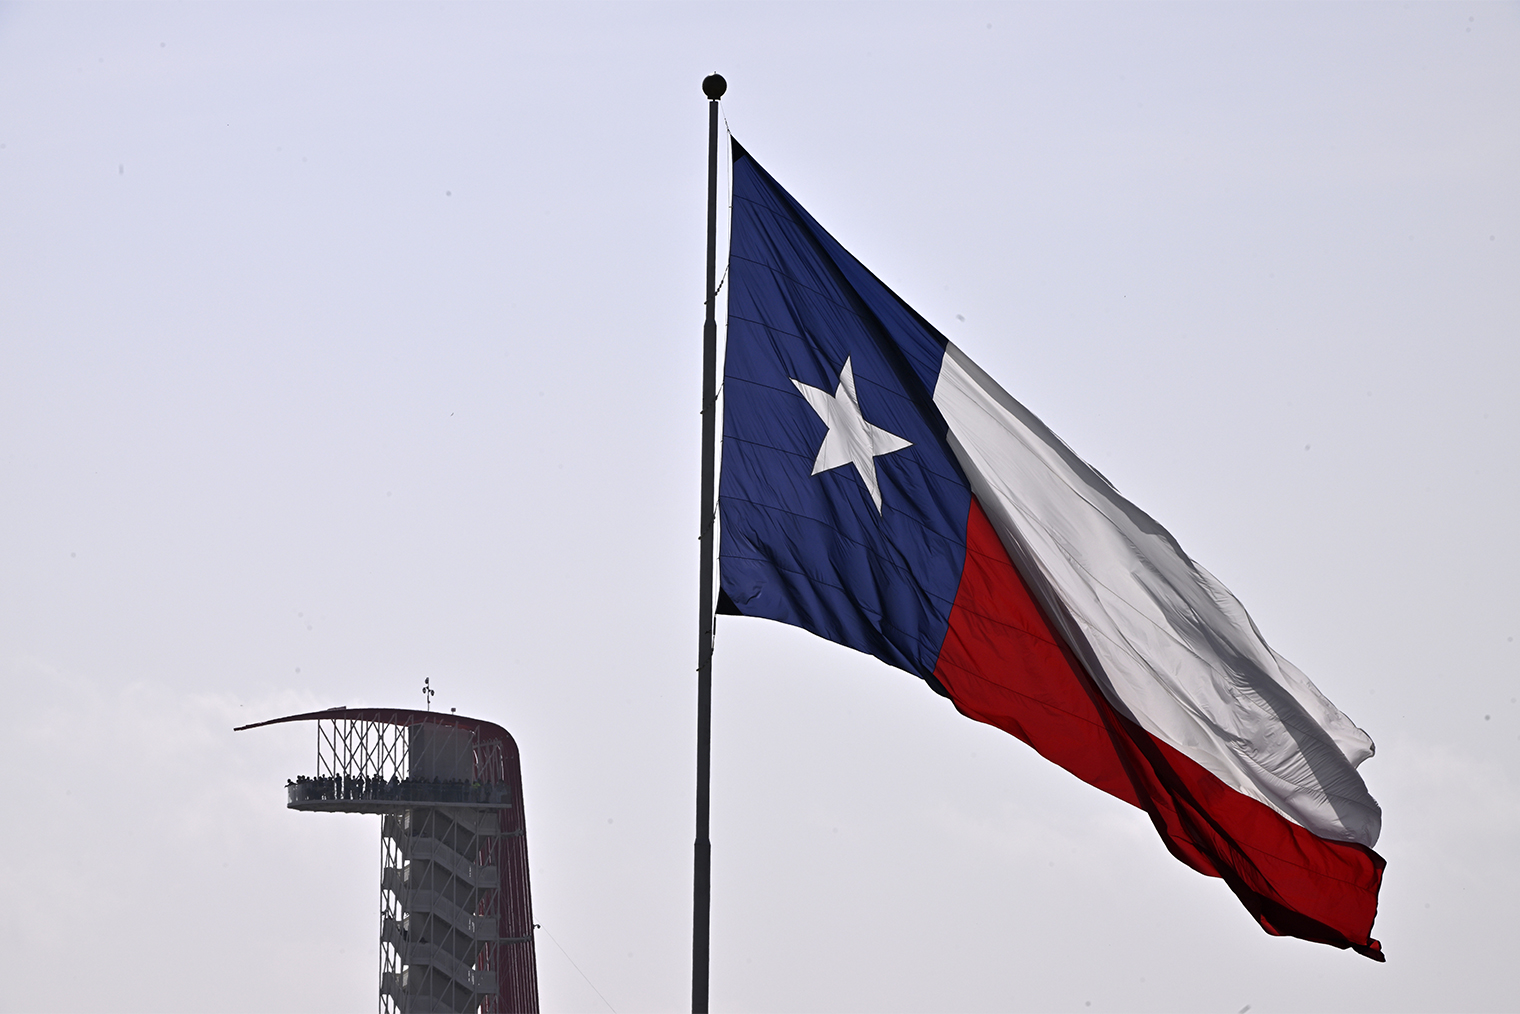 Операцию по борьбе с нелегальными мигрантами назвали Lone Star — в честь звезды на флаге Техаса. Фотография: Logan Riely / Getty Images